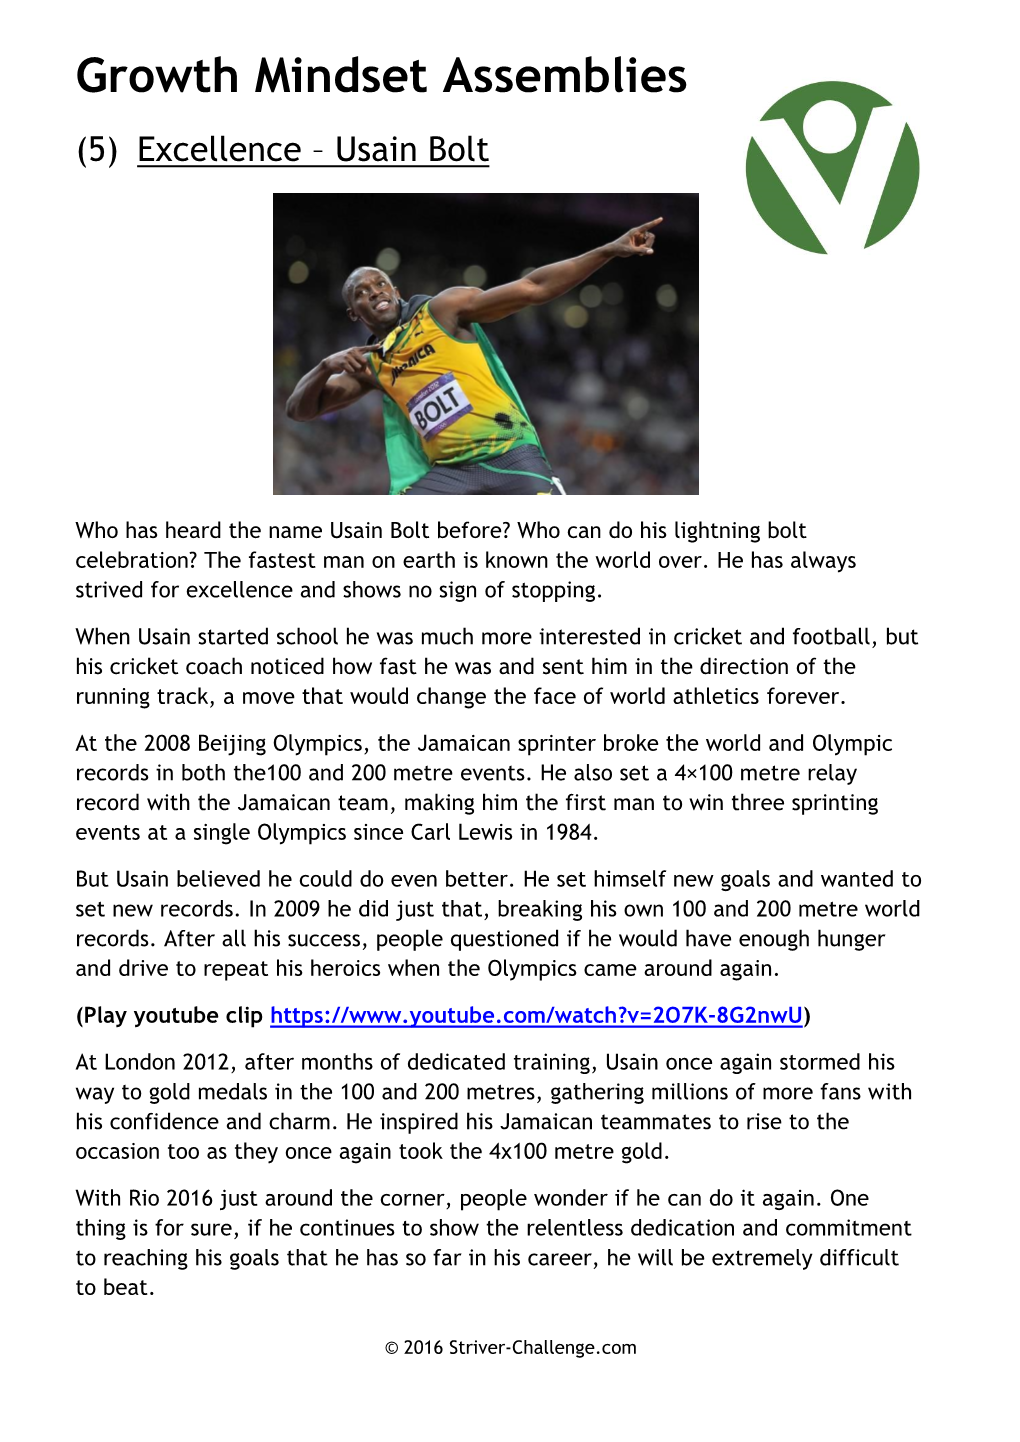 Growth Mindset Assemblies (5) Excellence – Usain Bolt